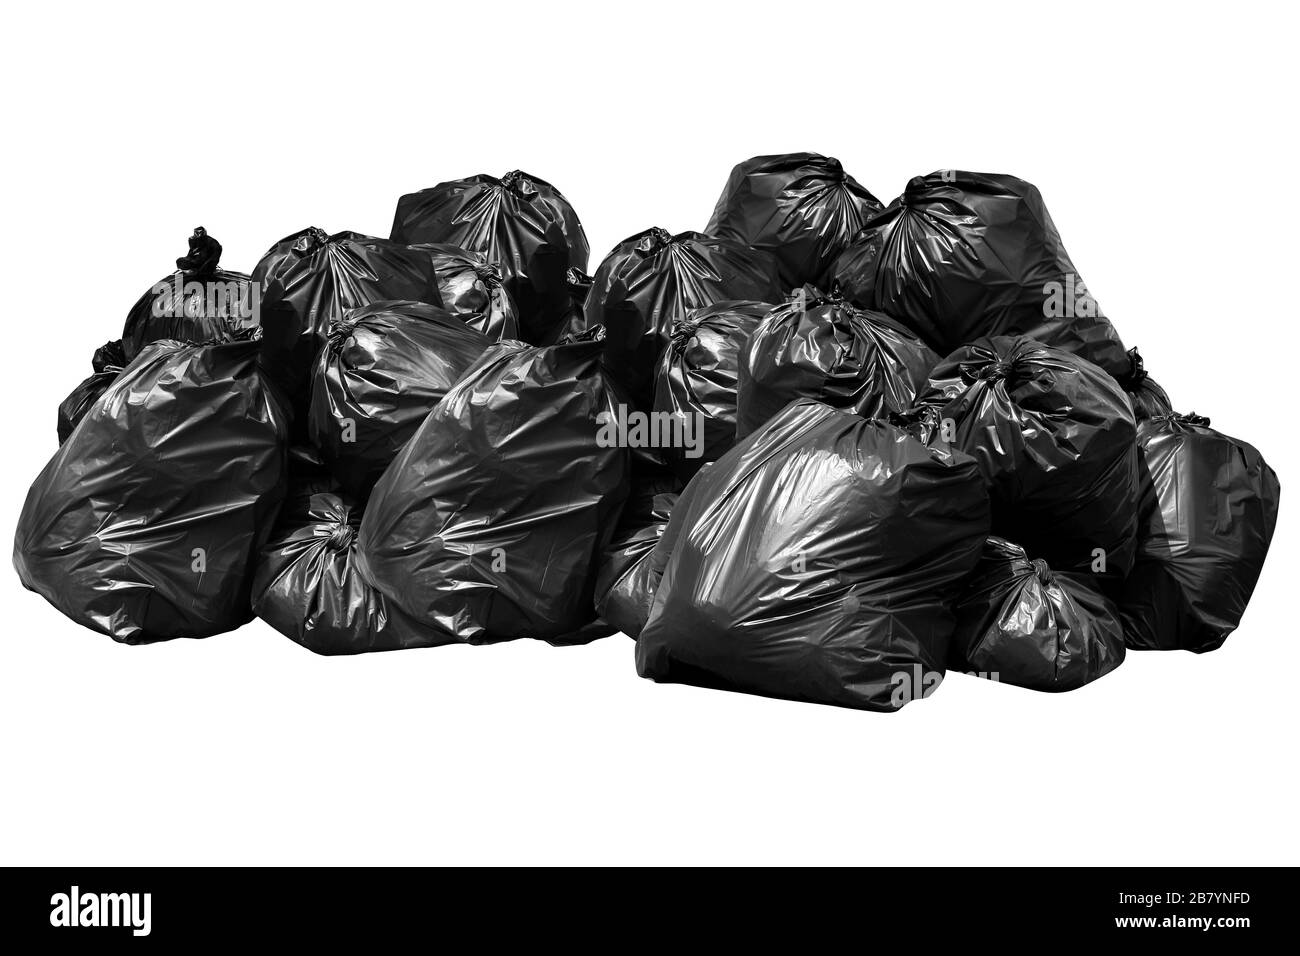 Sac poubelle Bin Bin, corbeille,, déchets, détritus, sacs en plastique pile  isolé sur fond blanc Photo Stock - Alamy